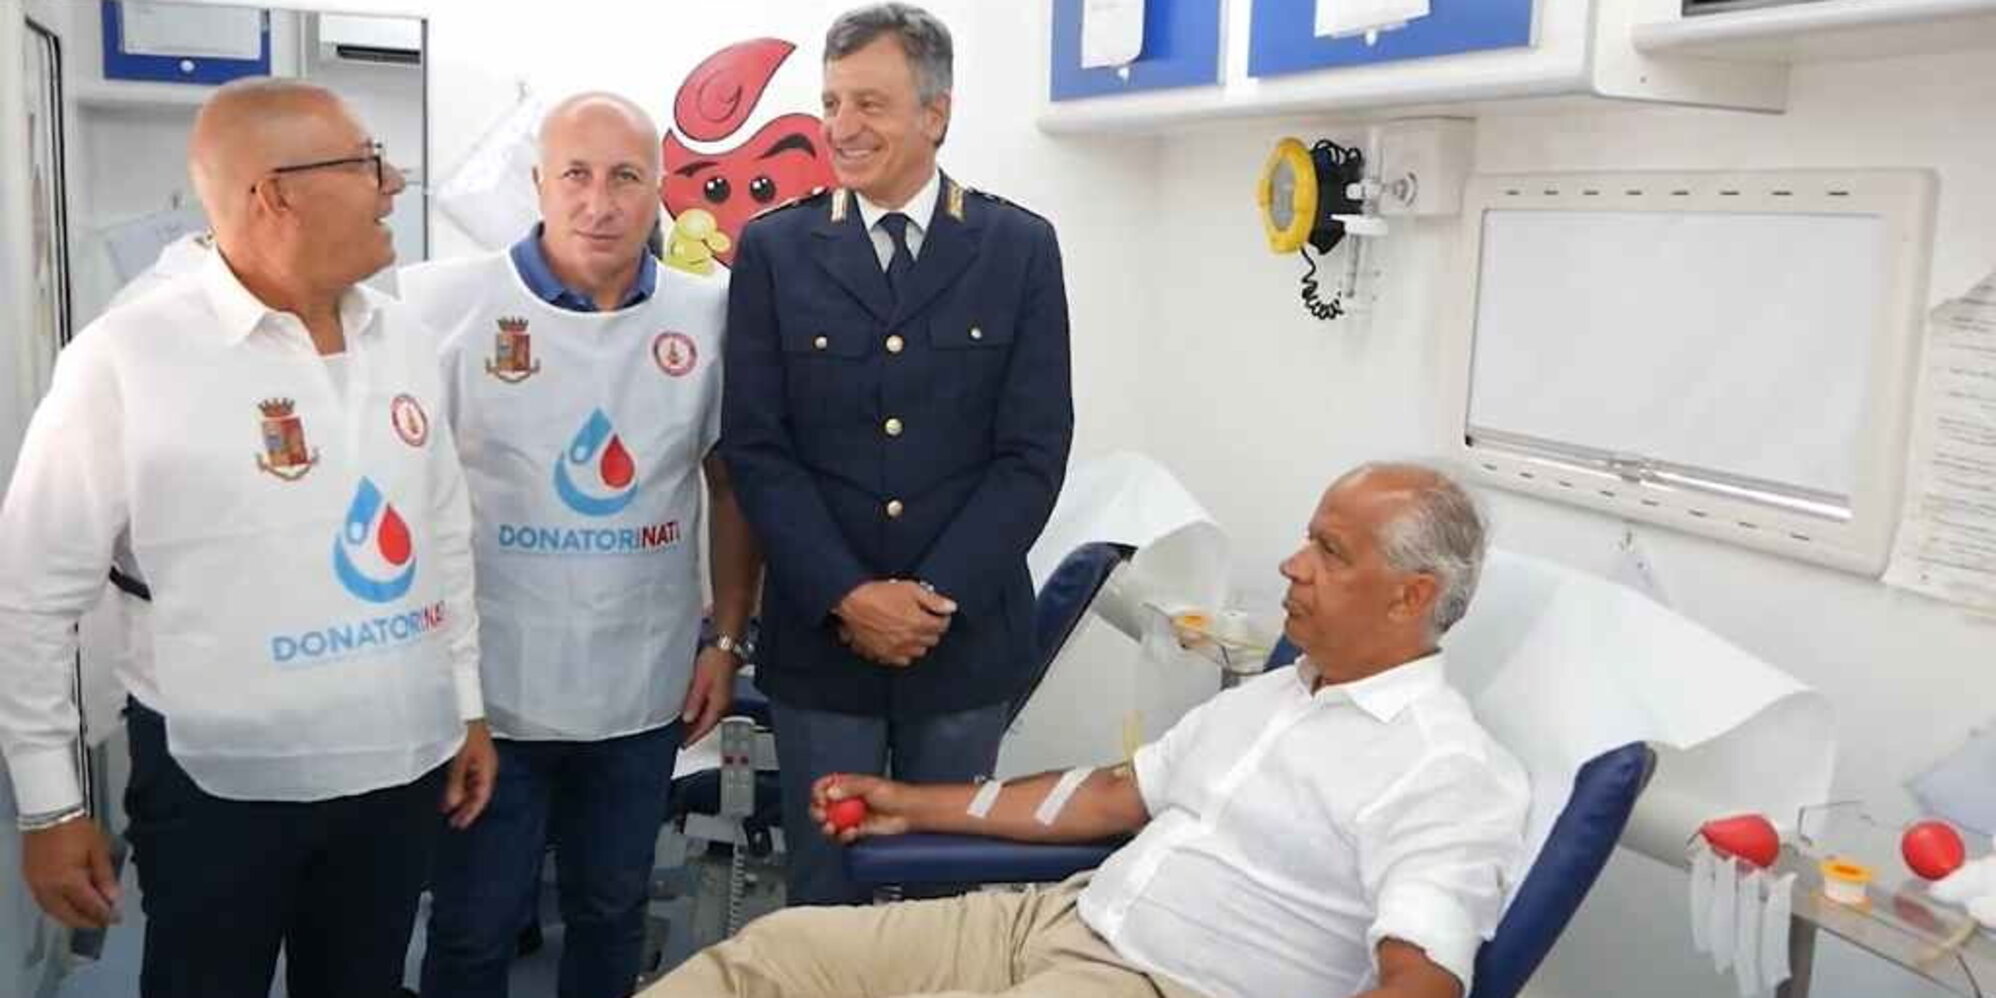 Sbarchi fuori controllo, Piantedosi cerca di rifarsi un'immagine donando sangue in favore di fotografo